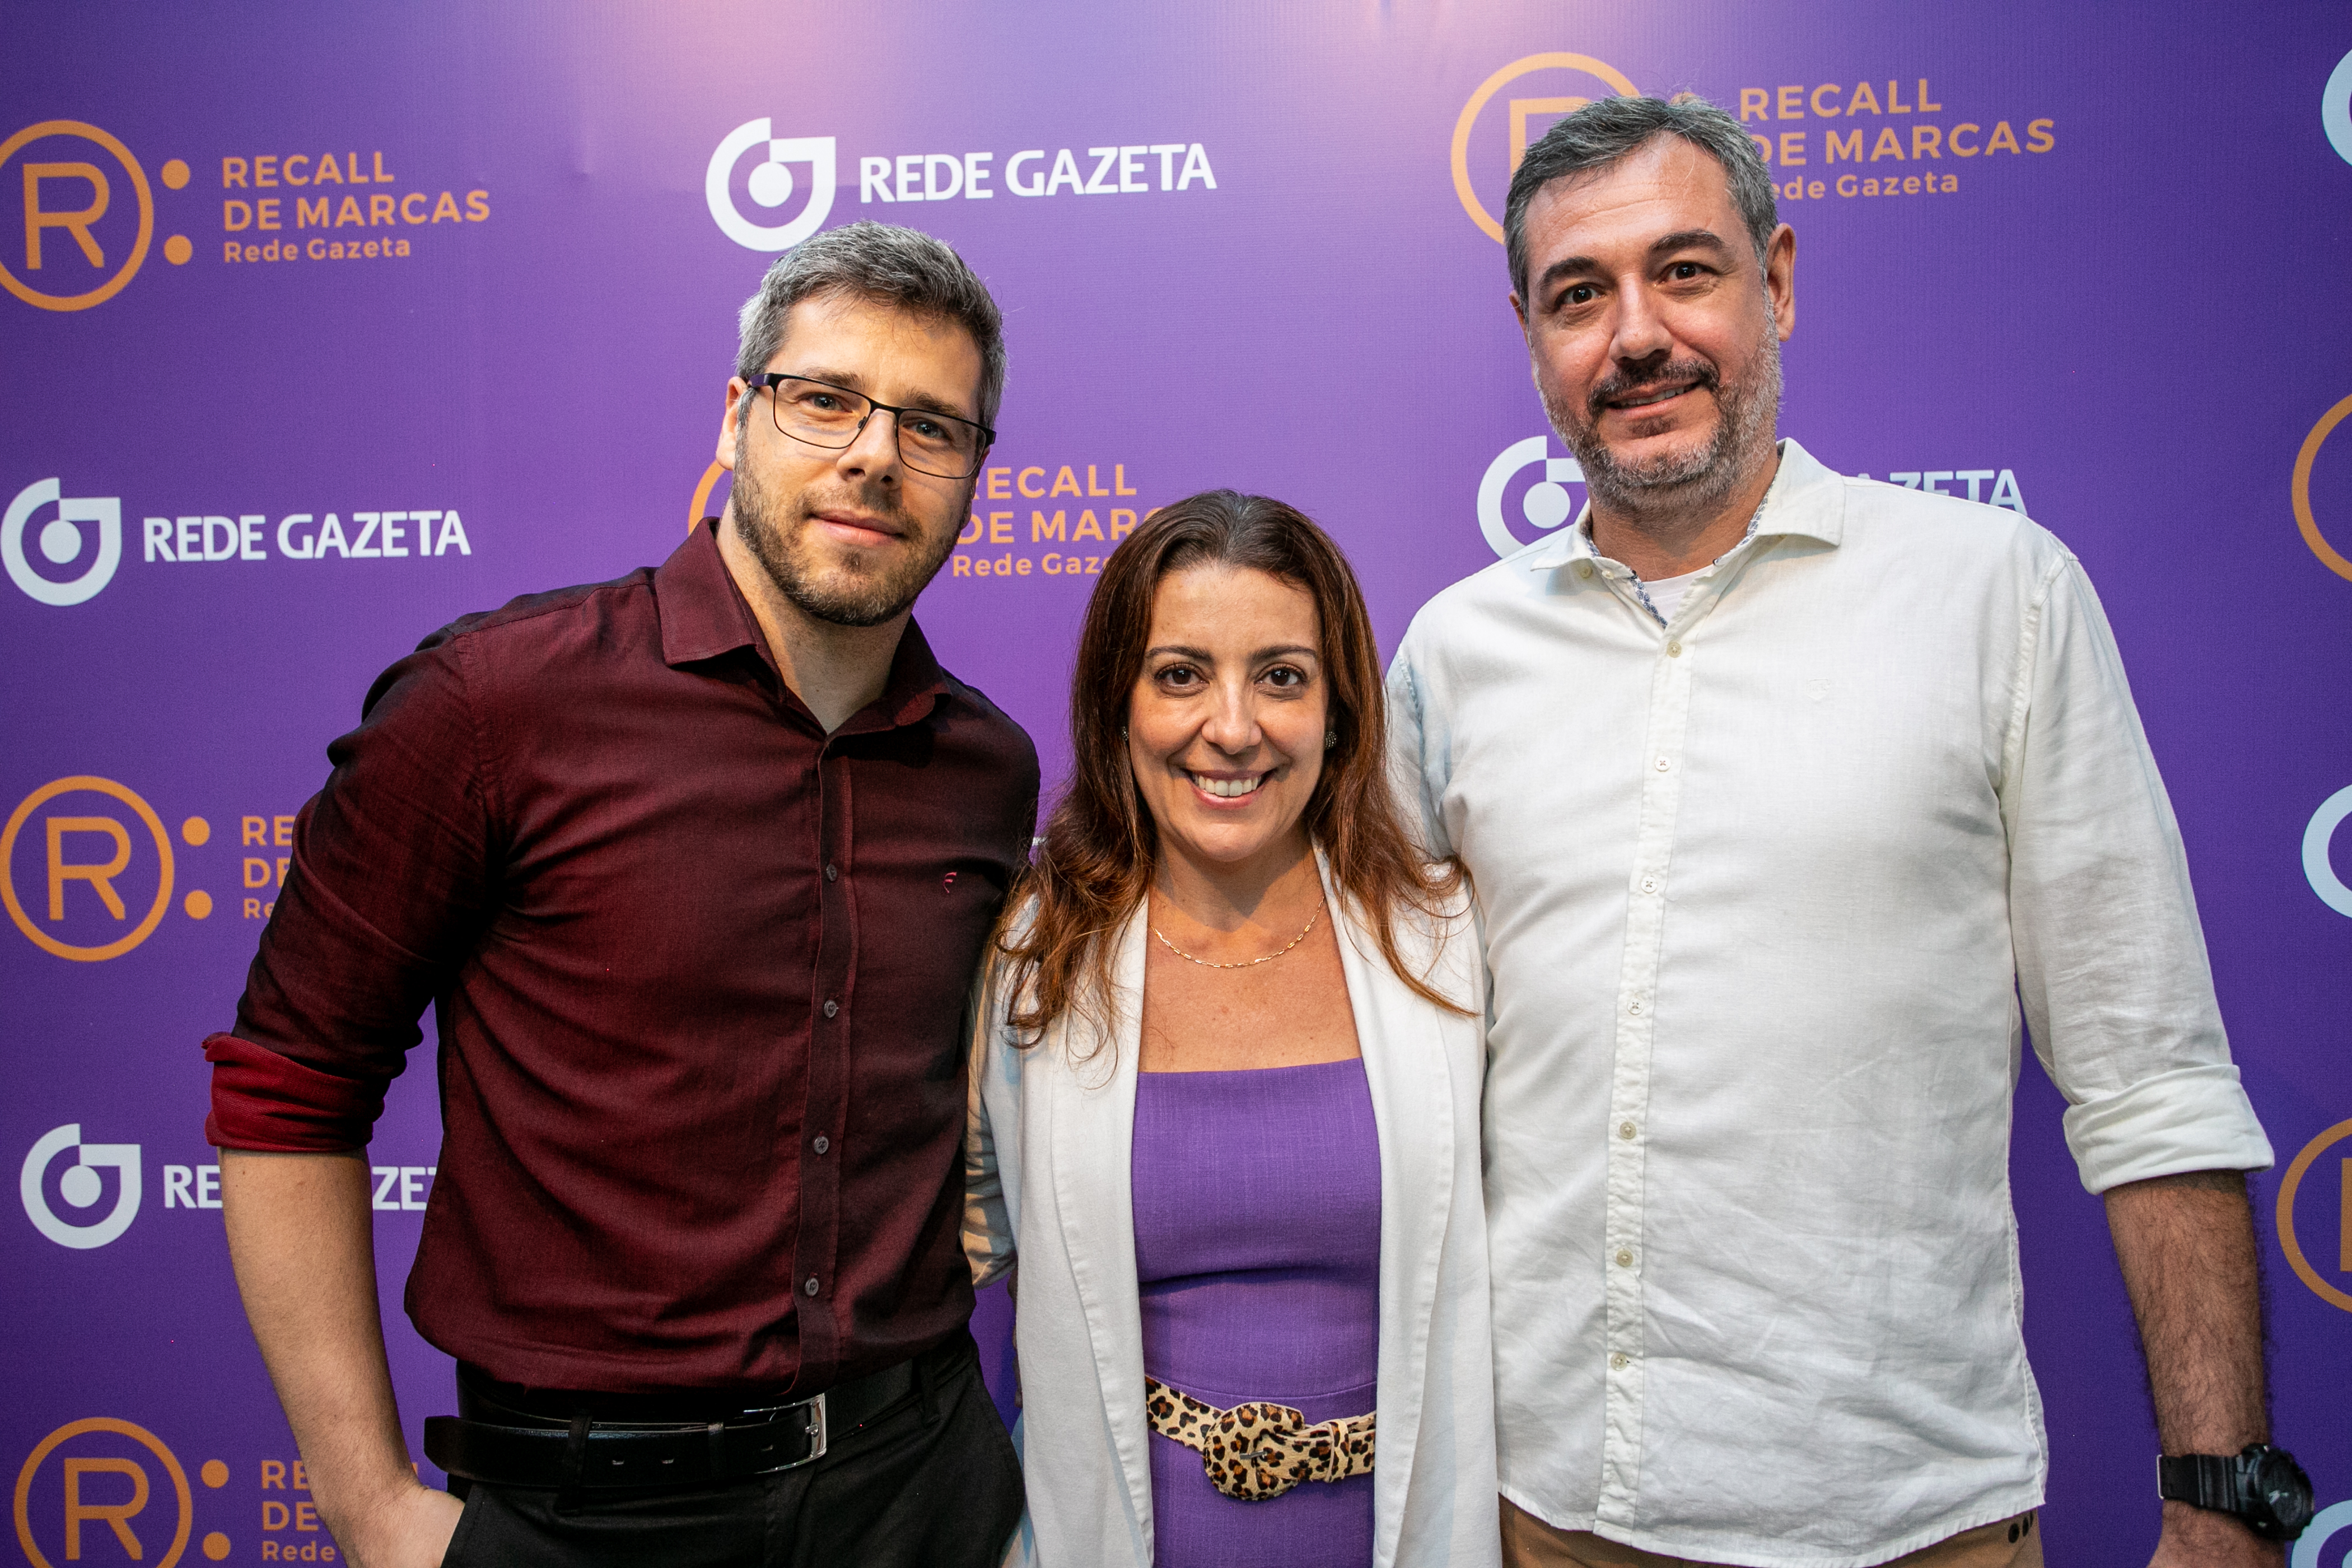 Lançamento do 30º Recall de Marcas da Rede Gazeta